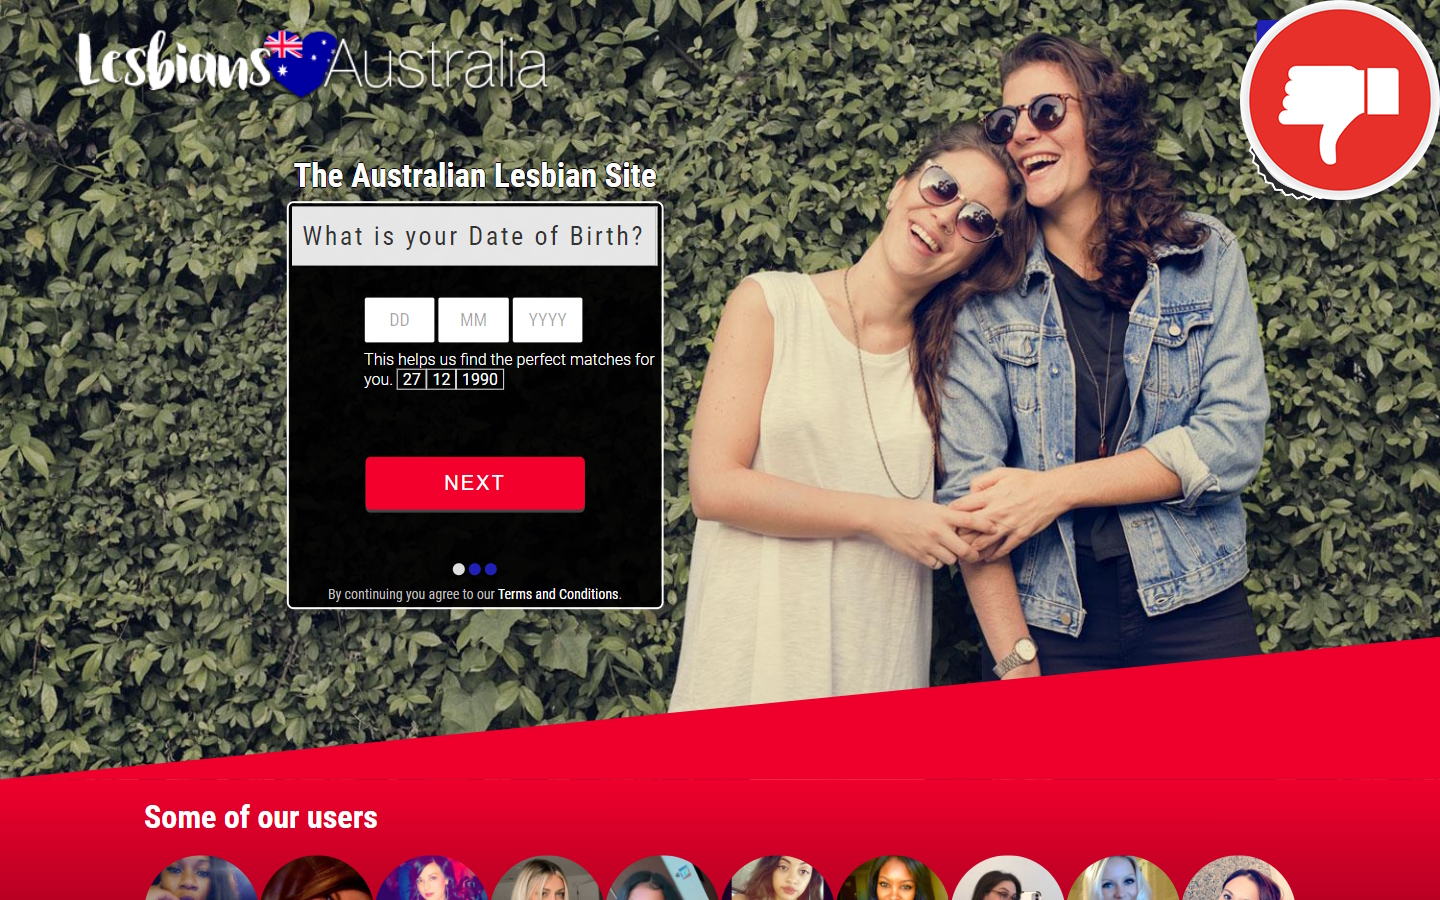 Review LesbiansAustralia.com.au Scam